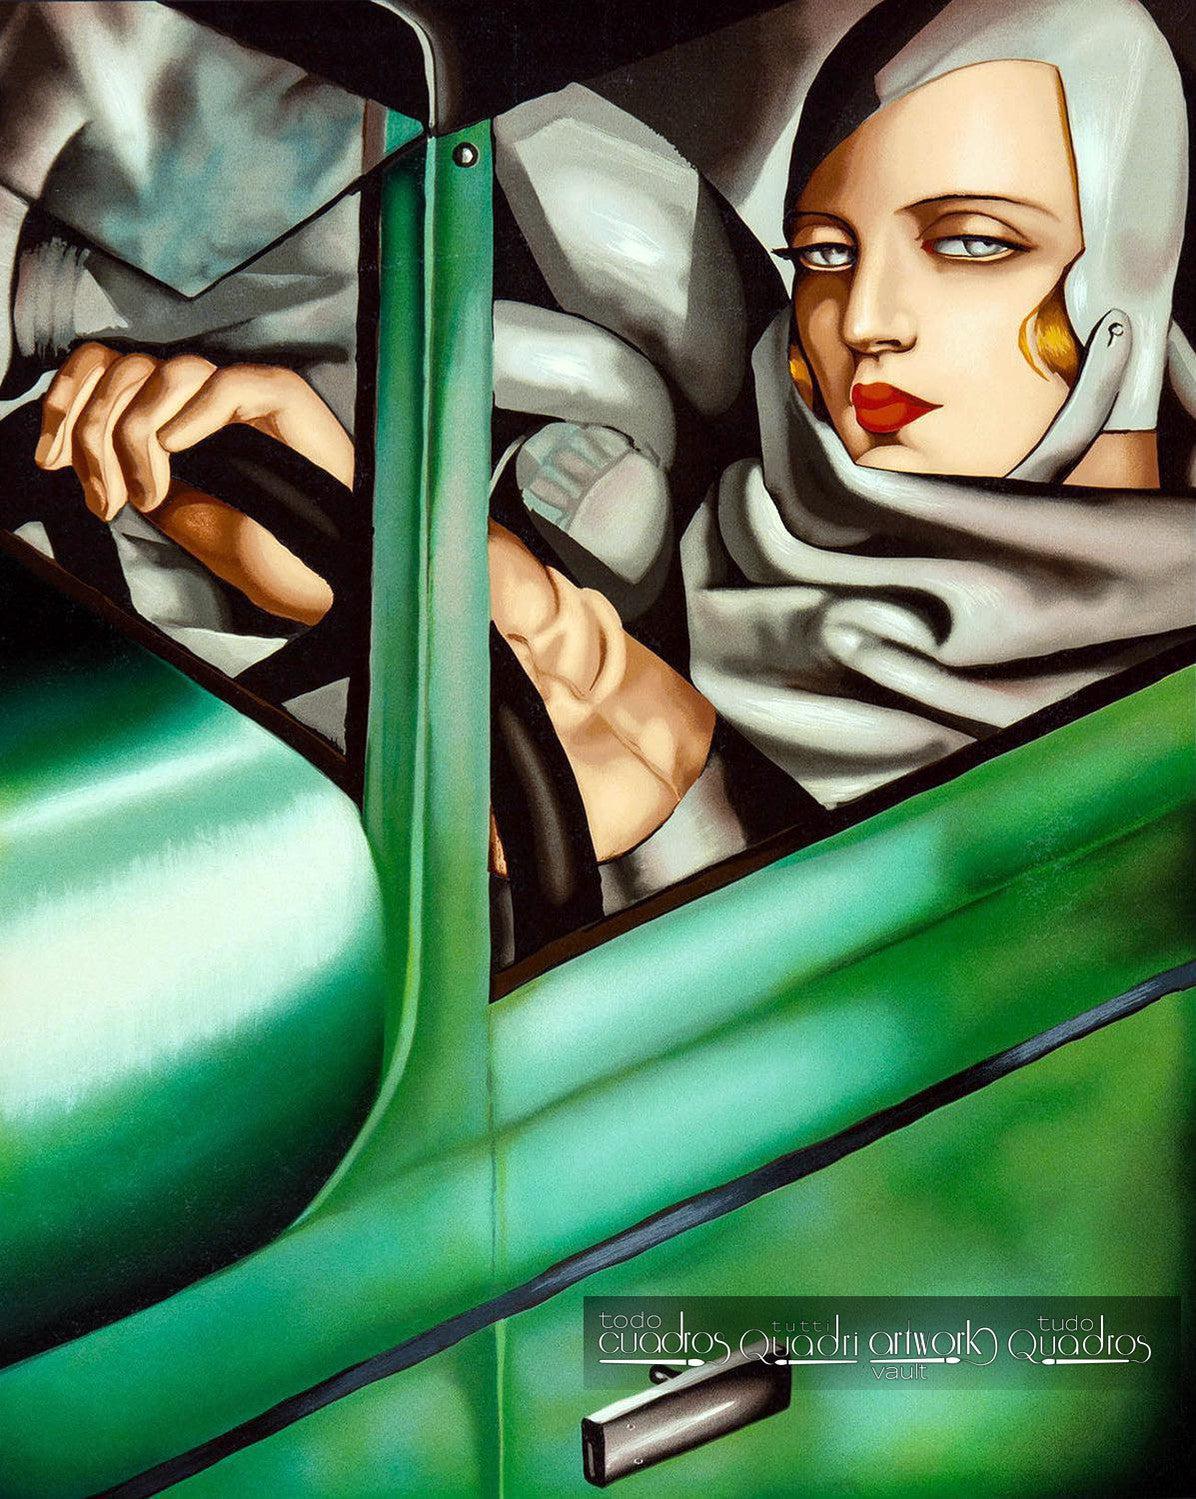 Autoritratto sulla Bugatti verde, Lempicka